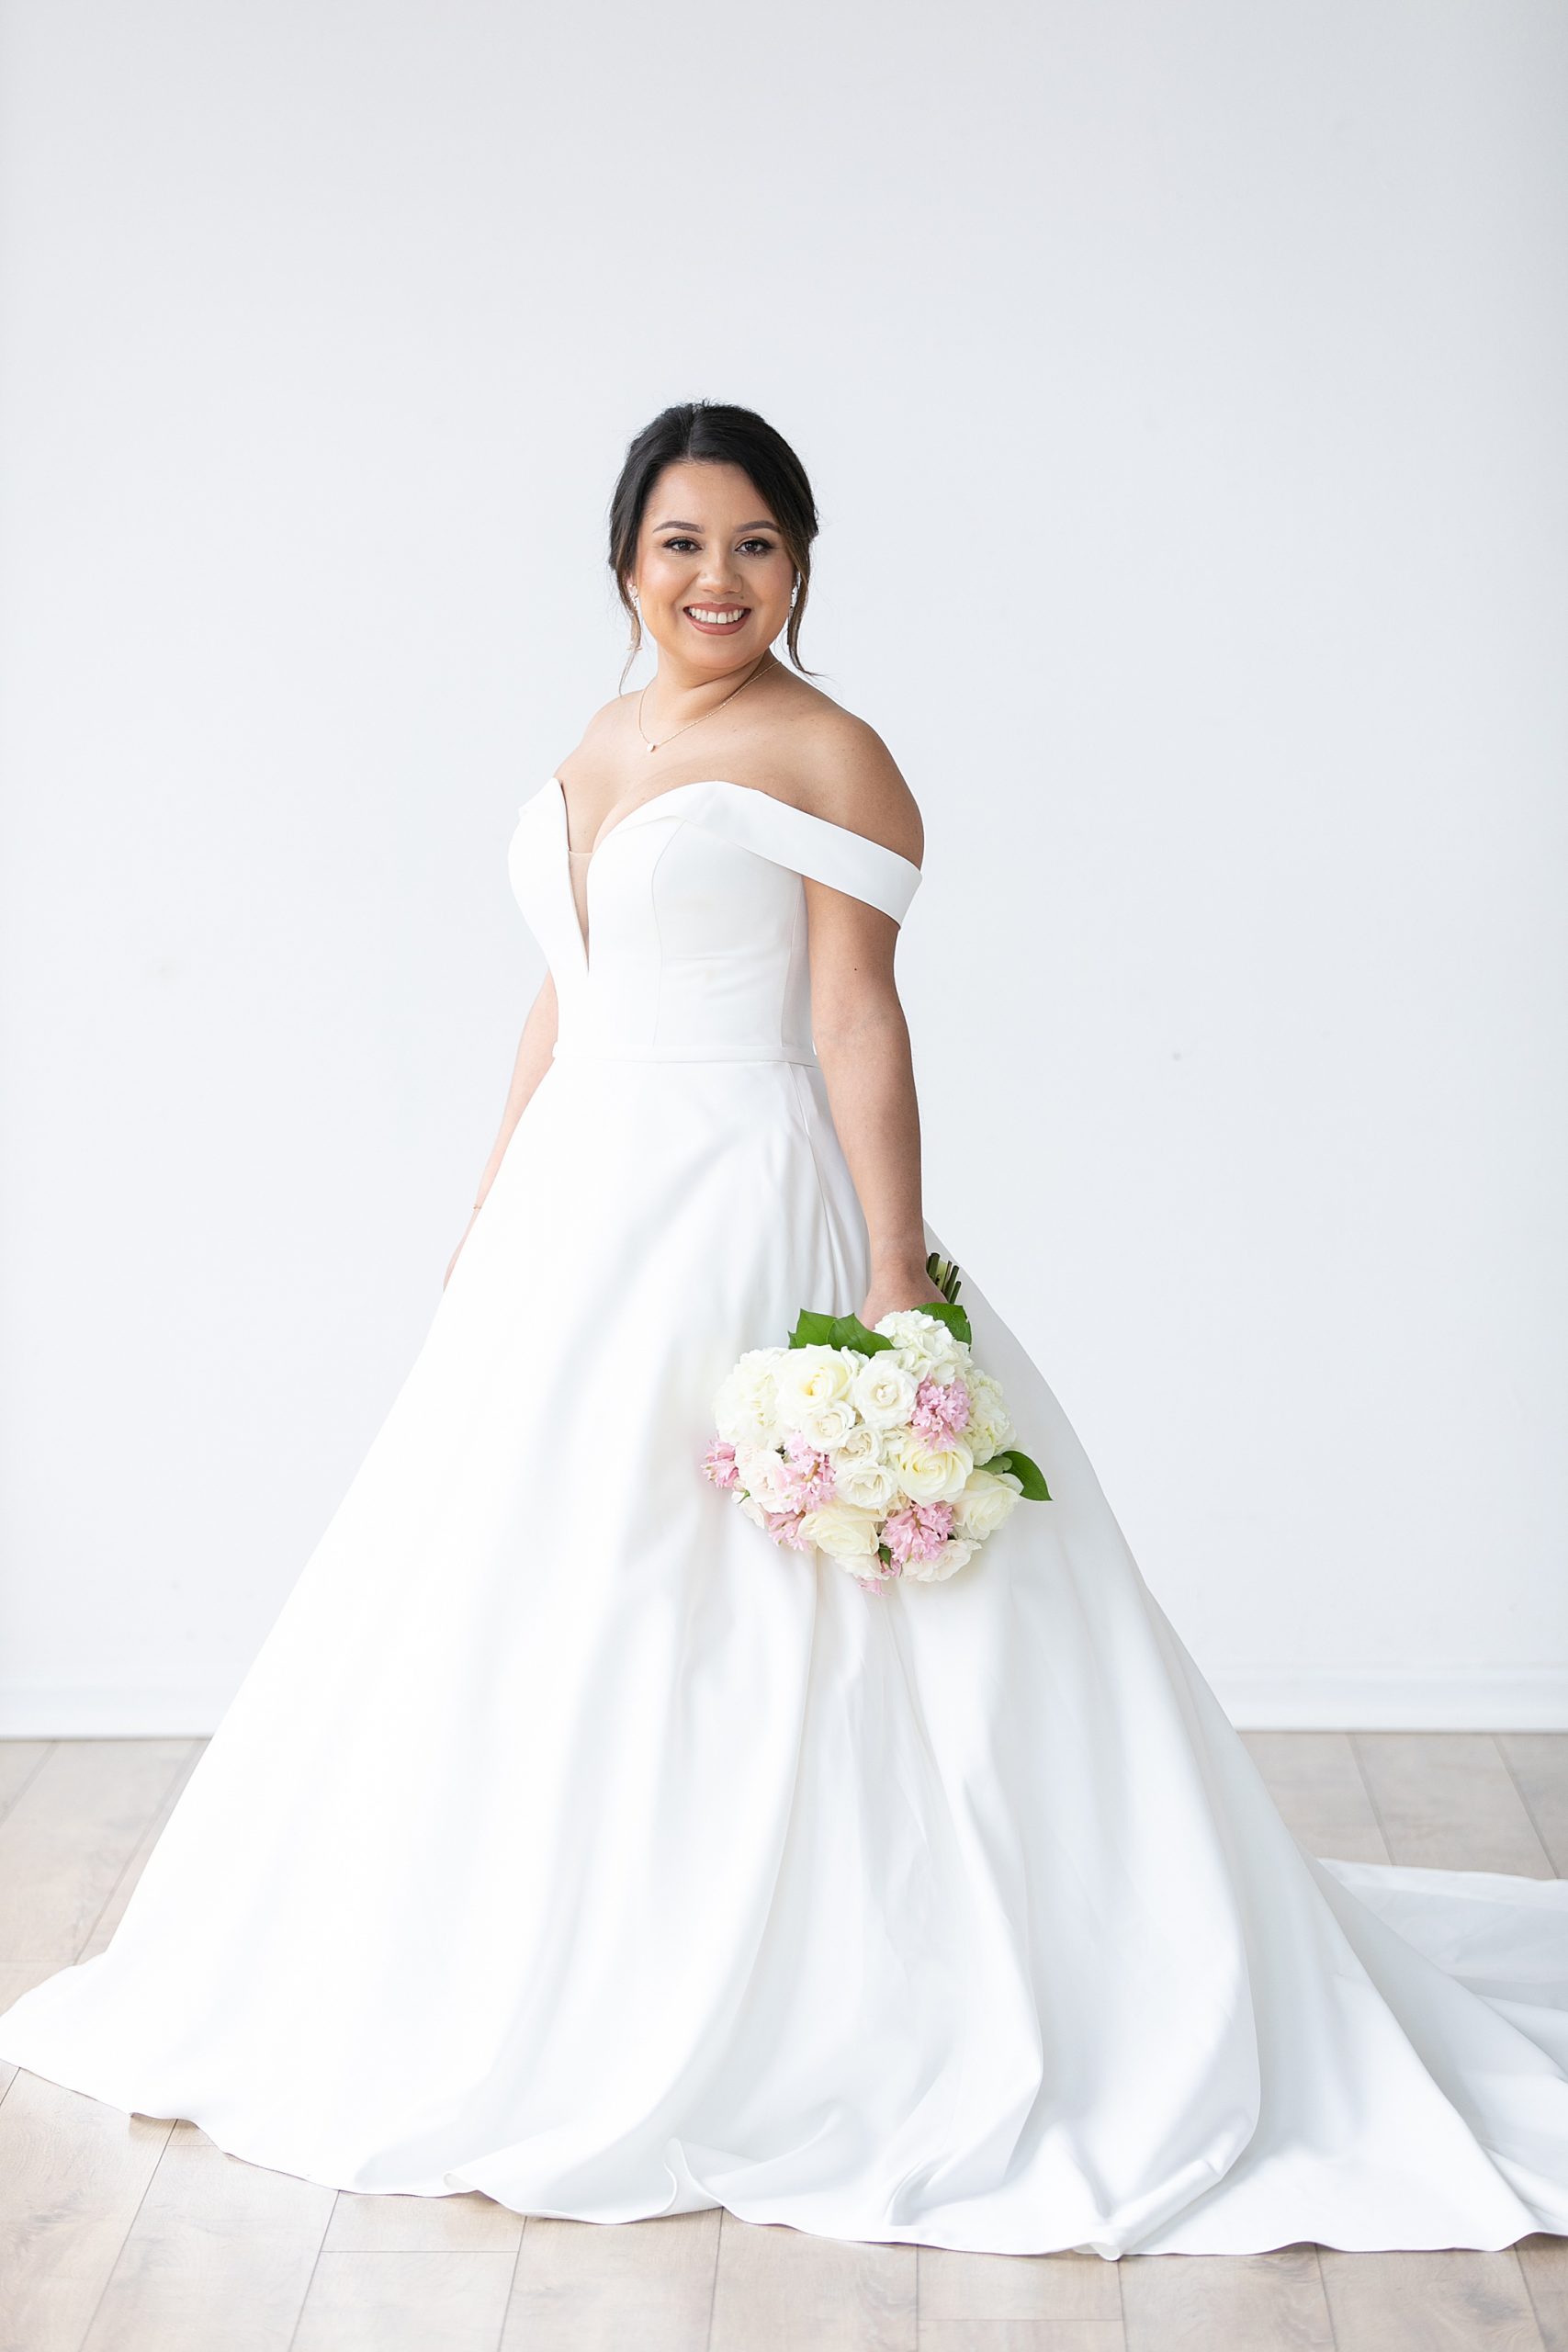 Dallas bride in modern wedding dress for bridal portraits